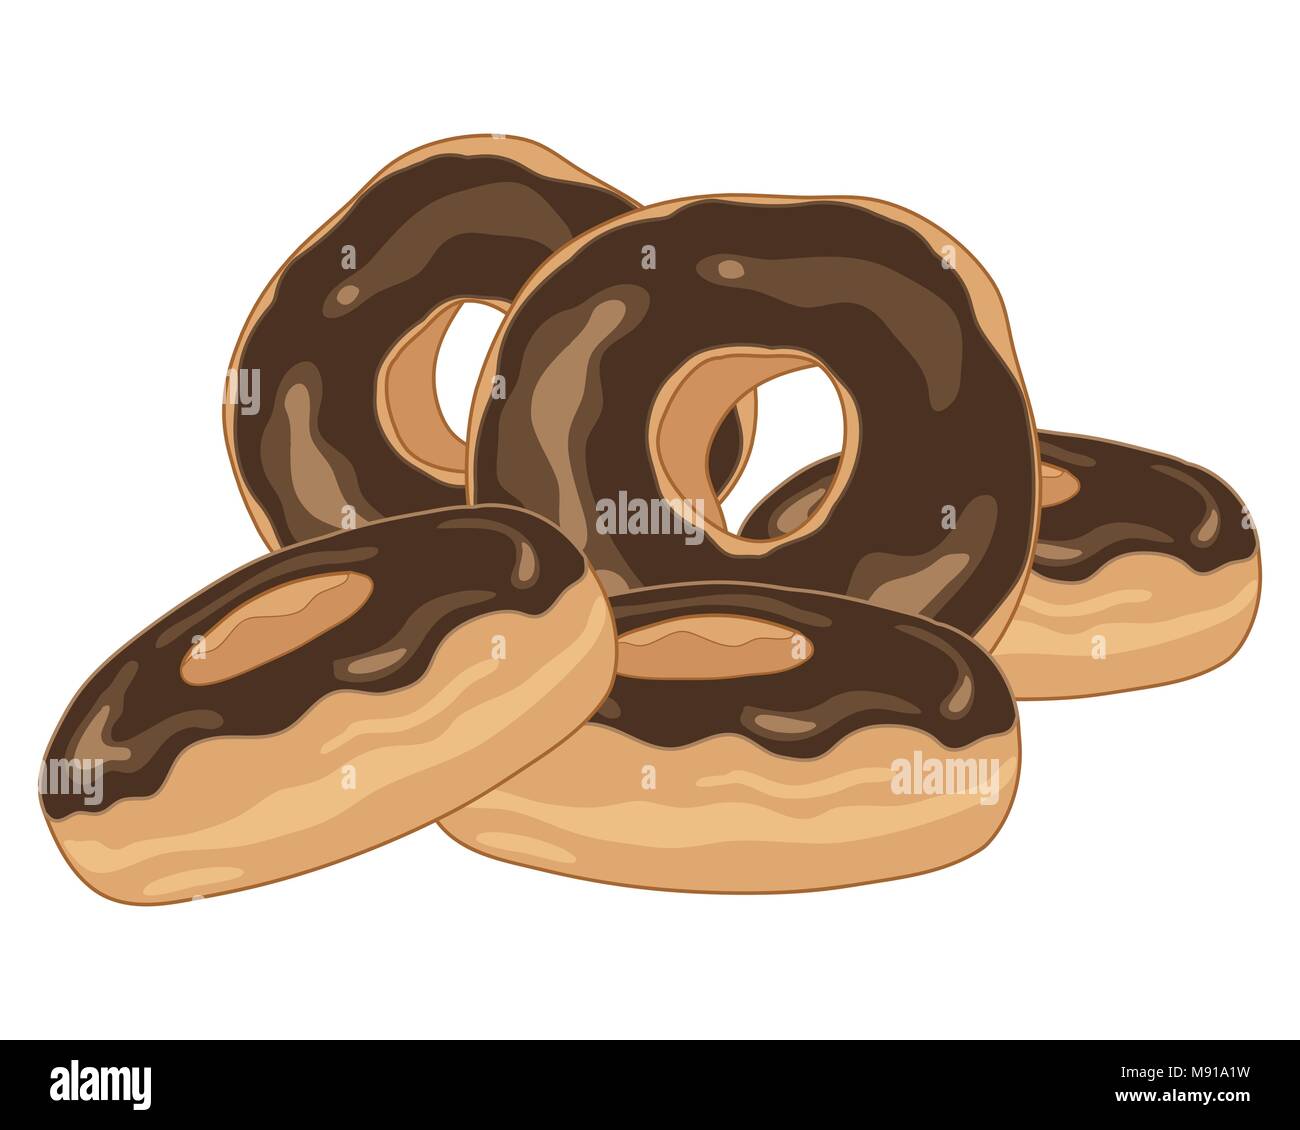 Un vecteur illustration en eps 8 format d'une pile de délicieux beignets chocolat frais sur un fond blanc Illustration de Vecteur